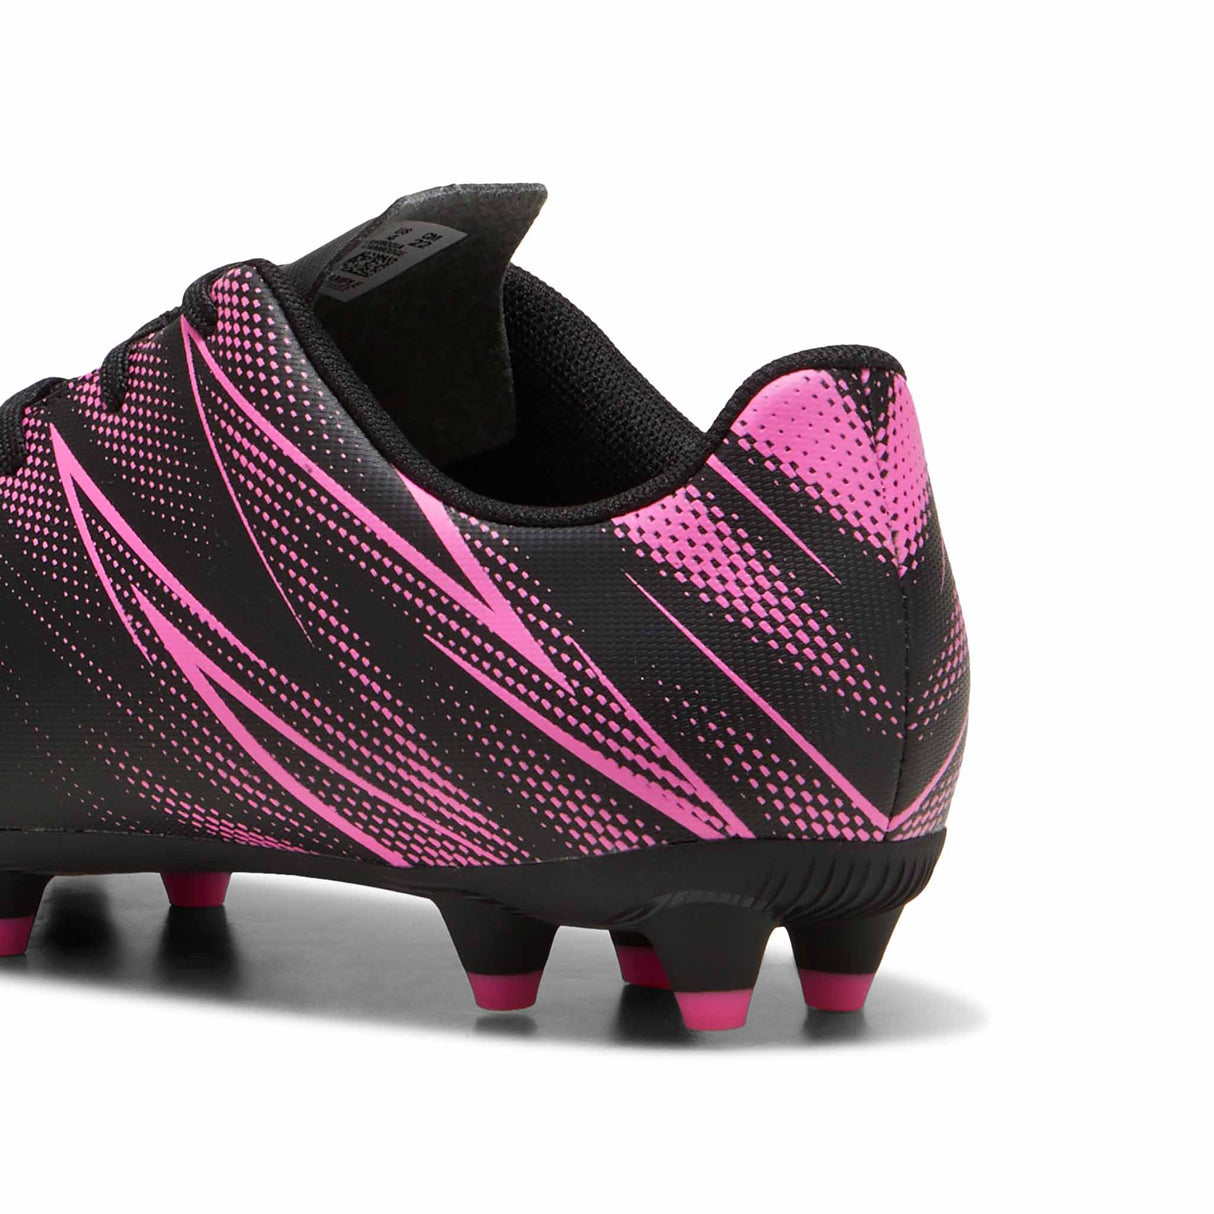 Puma Attacanto FG/AG Junior chaussure de soccer enfant - Puma Black / Poison Pink